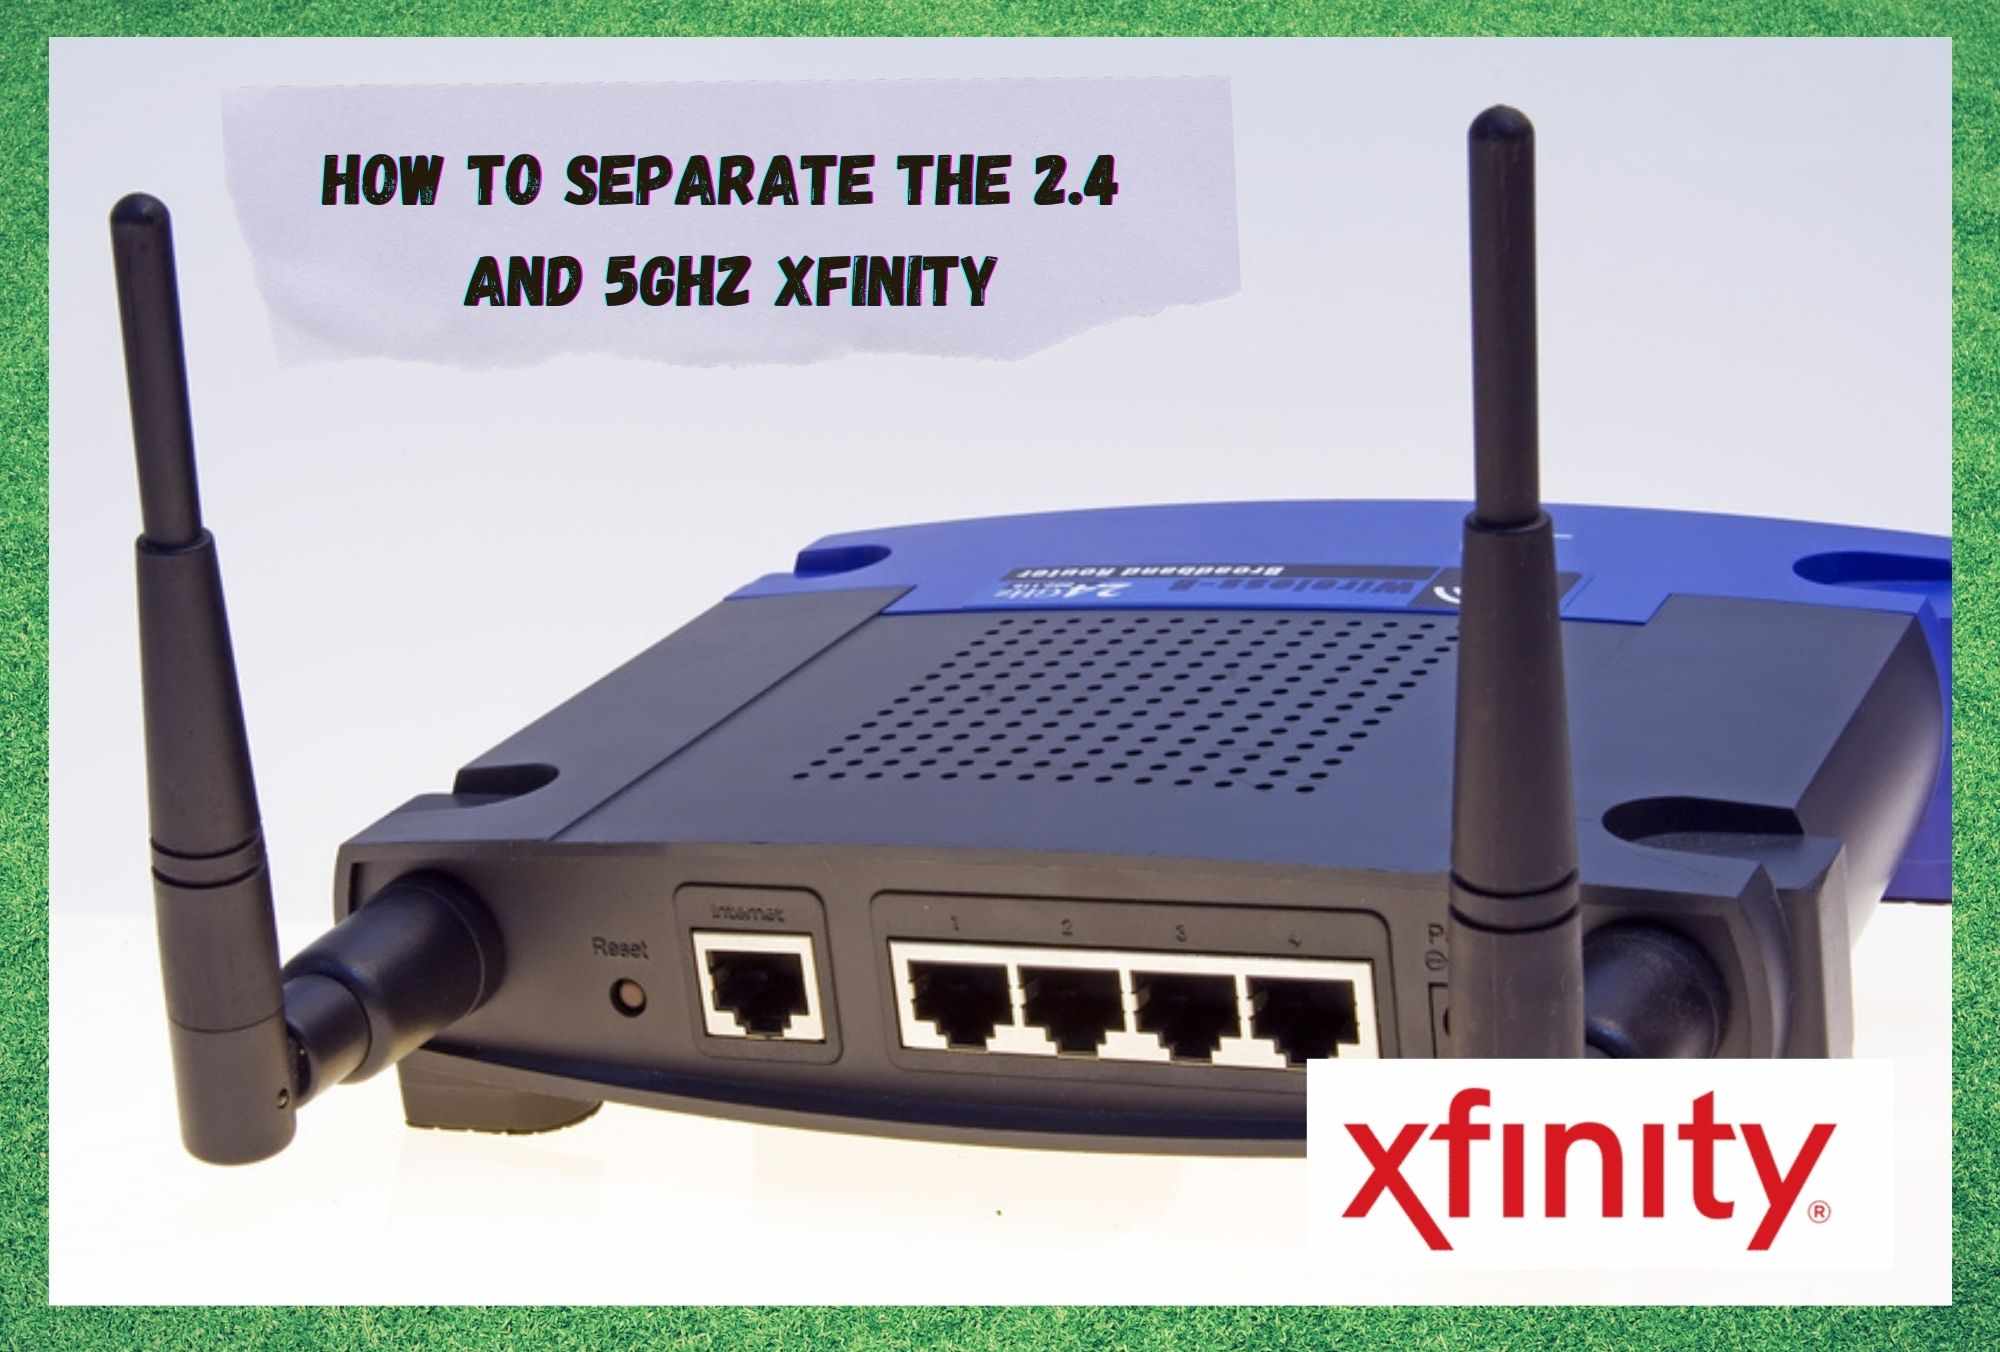 Hvordan skille 2.4 og 5GHz Xfinity?